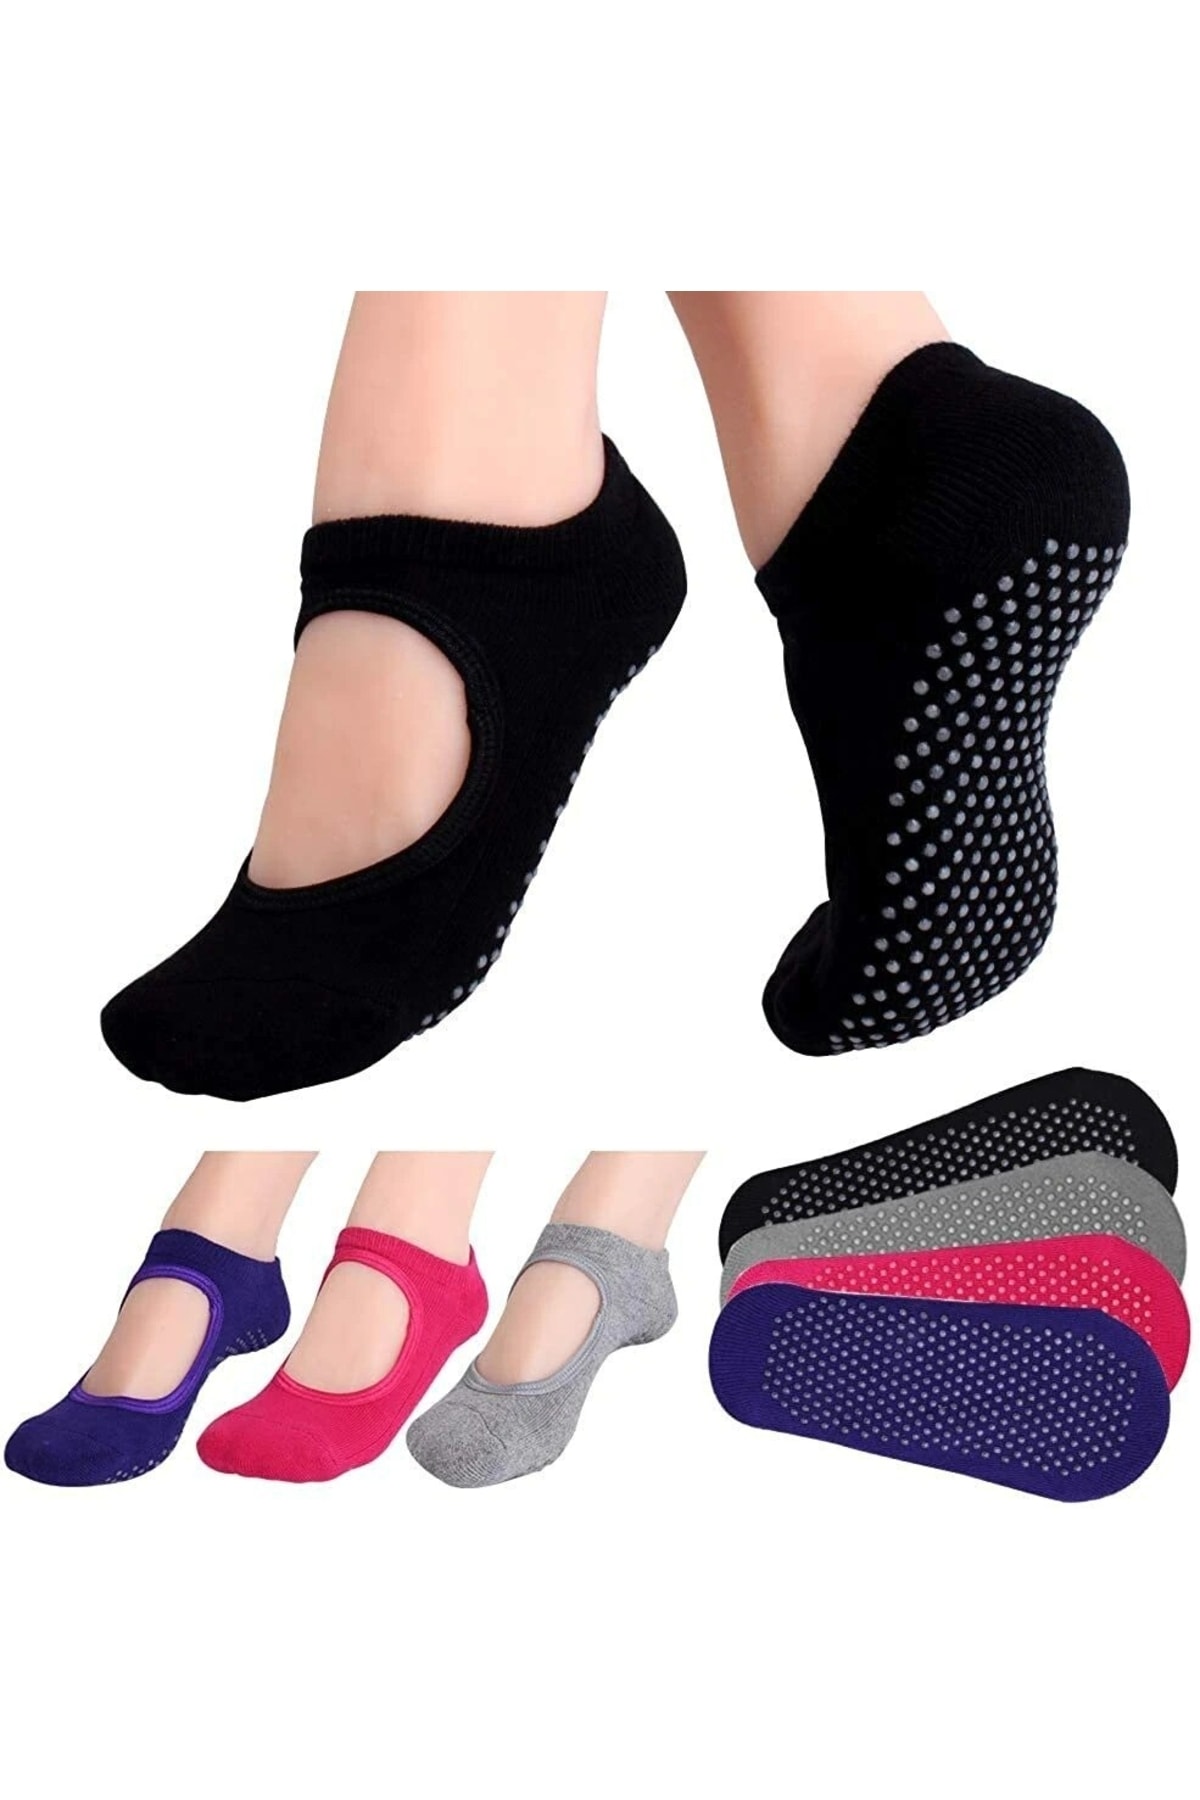 çorapmanya 3 Çift Silikonlu Pilates - Yoga Çorabı Çok Renkli